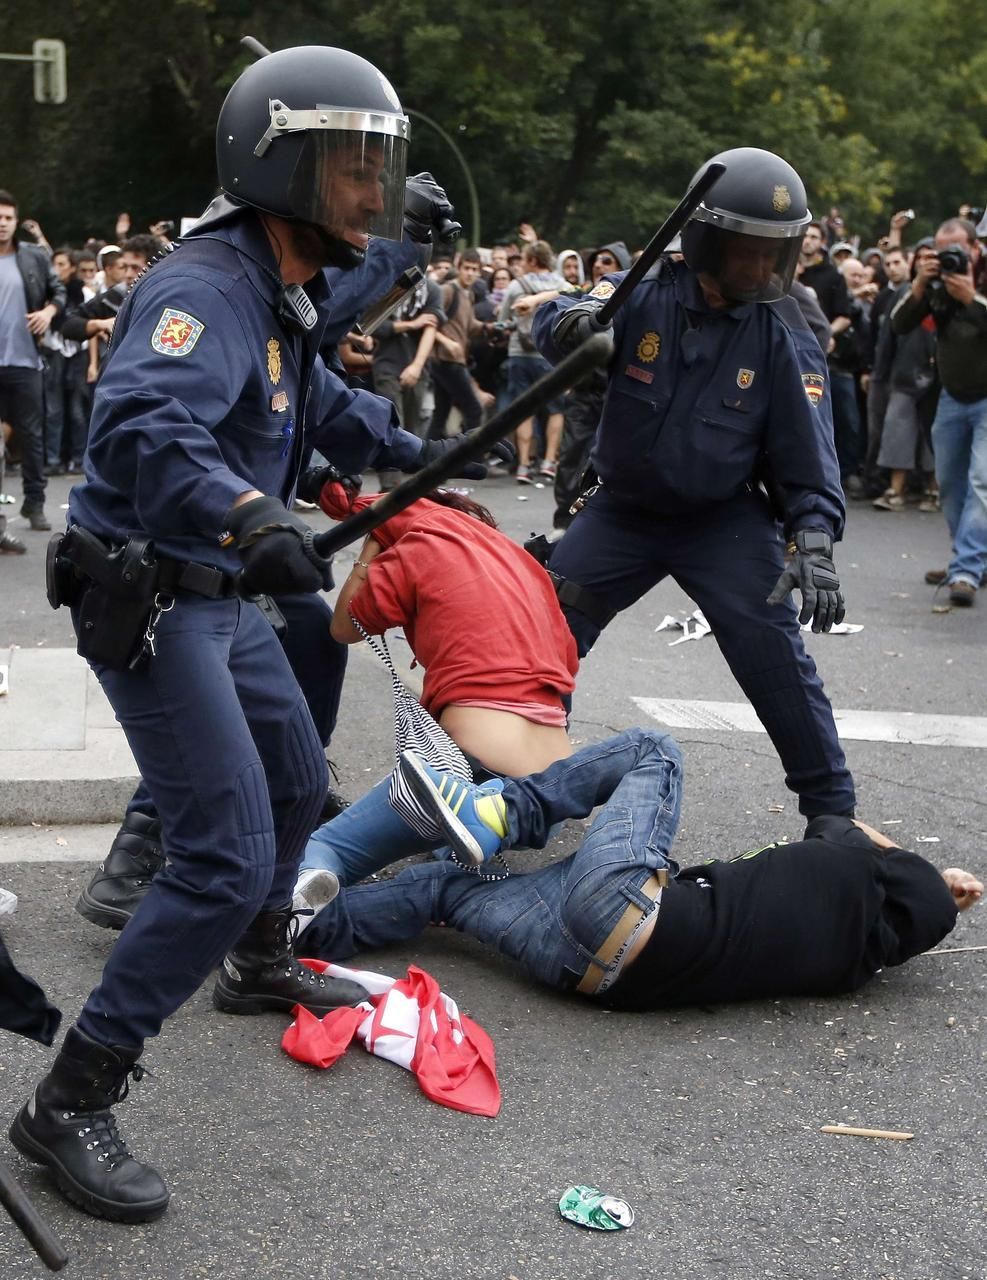 Foto: Protesty v Madridě